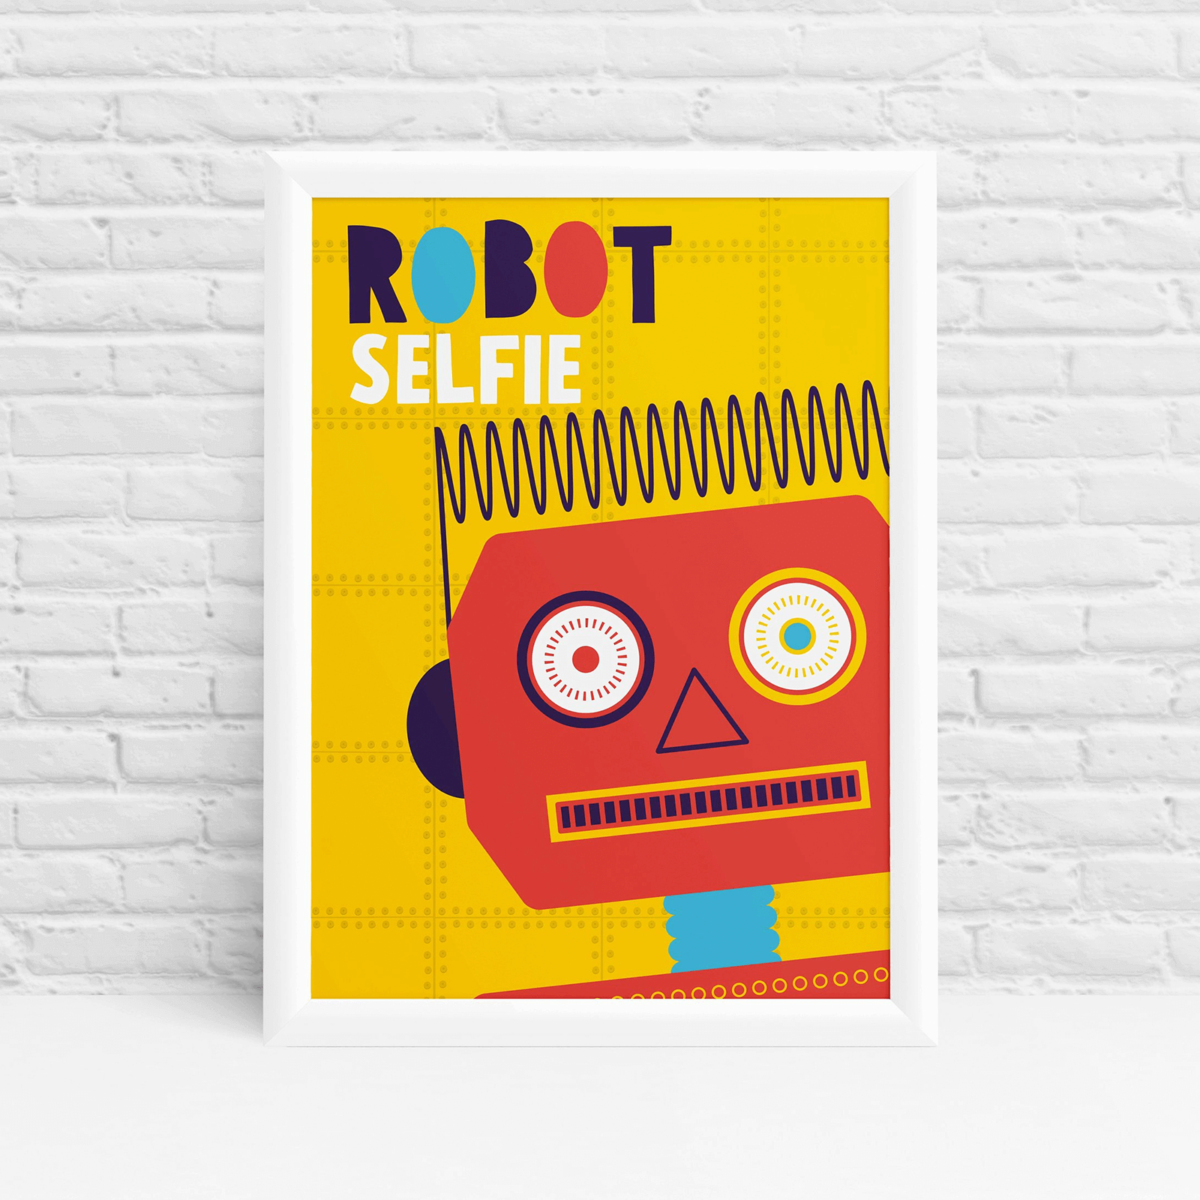 Mr Robot - Friendly vintage robot selfie poster design by Ibbleobble®